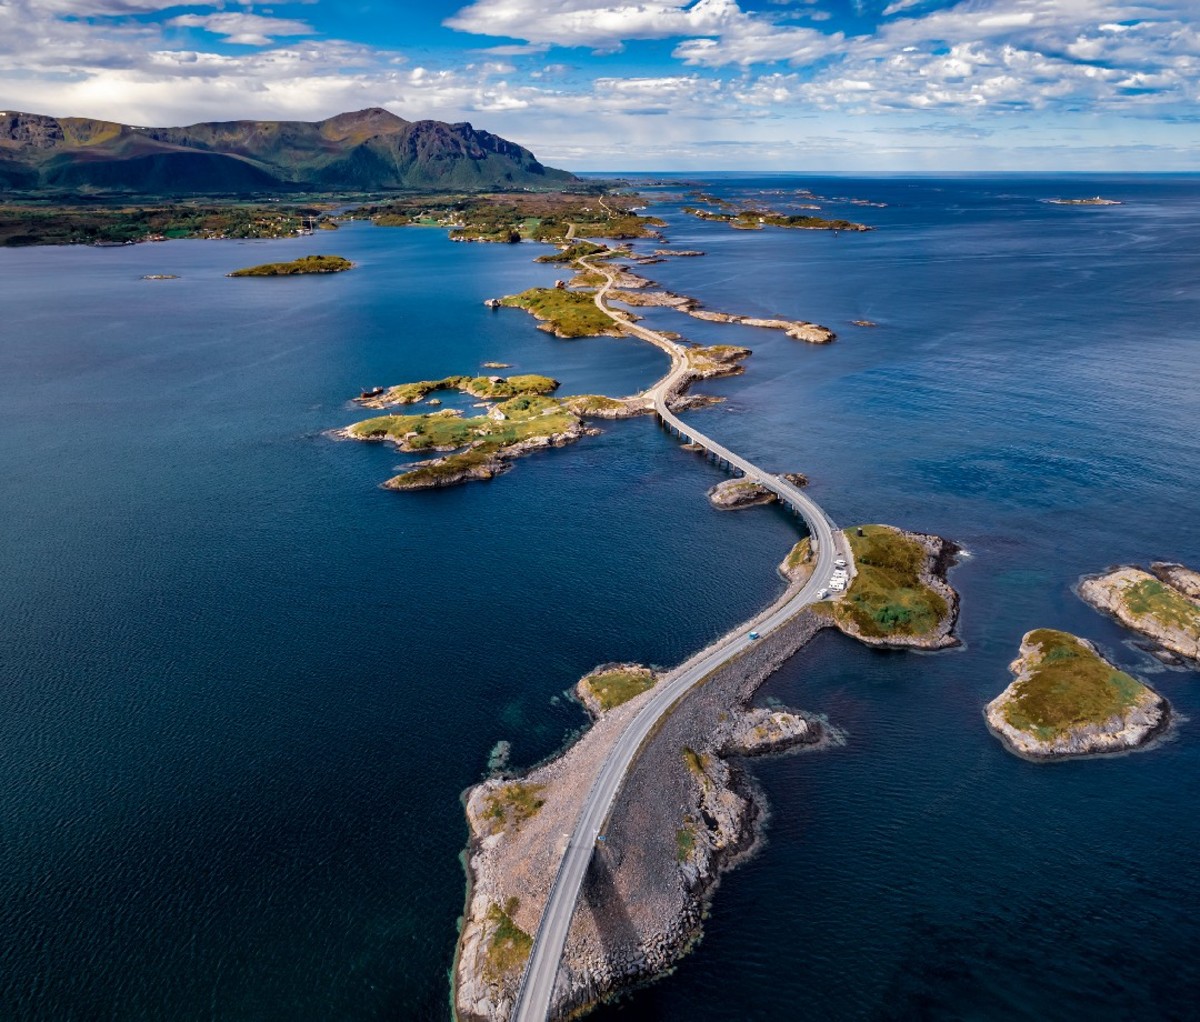 The Atlanterhavsveien (Atlantic Ocean Road) was named Norway's Construction of the Century in 2005.